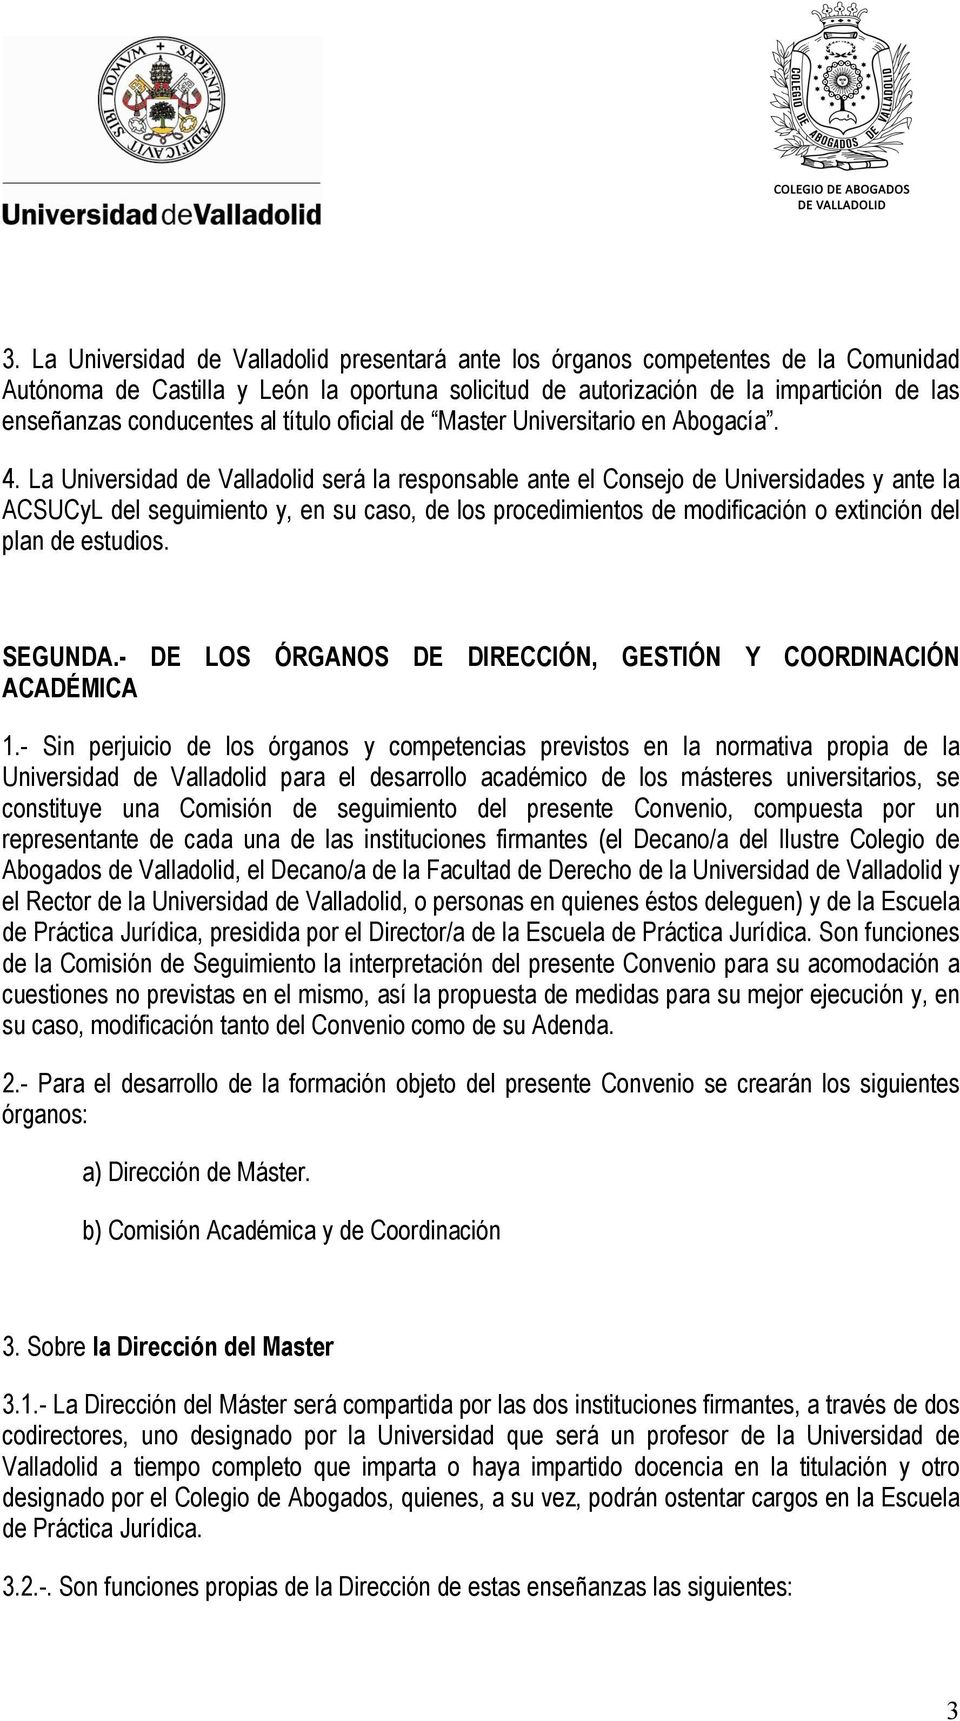 La Universidad de Valladolid será la responsable ante el Consejo de Universidades y ante la ACSUCyL del seguimiento y, en su caso, de los procedimientos de modificación o extinción del plan de